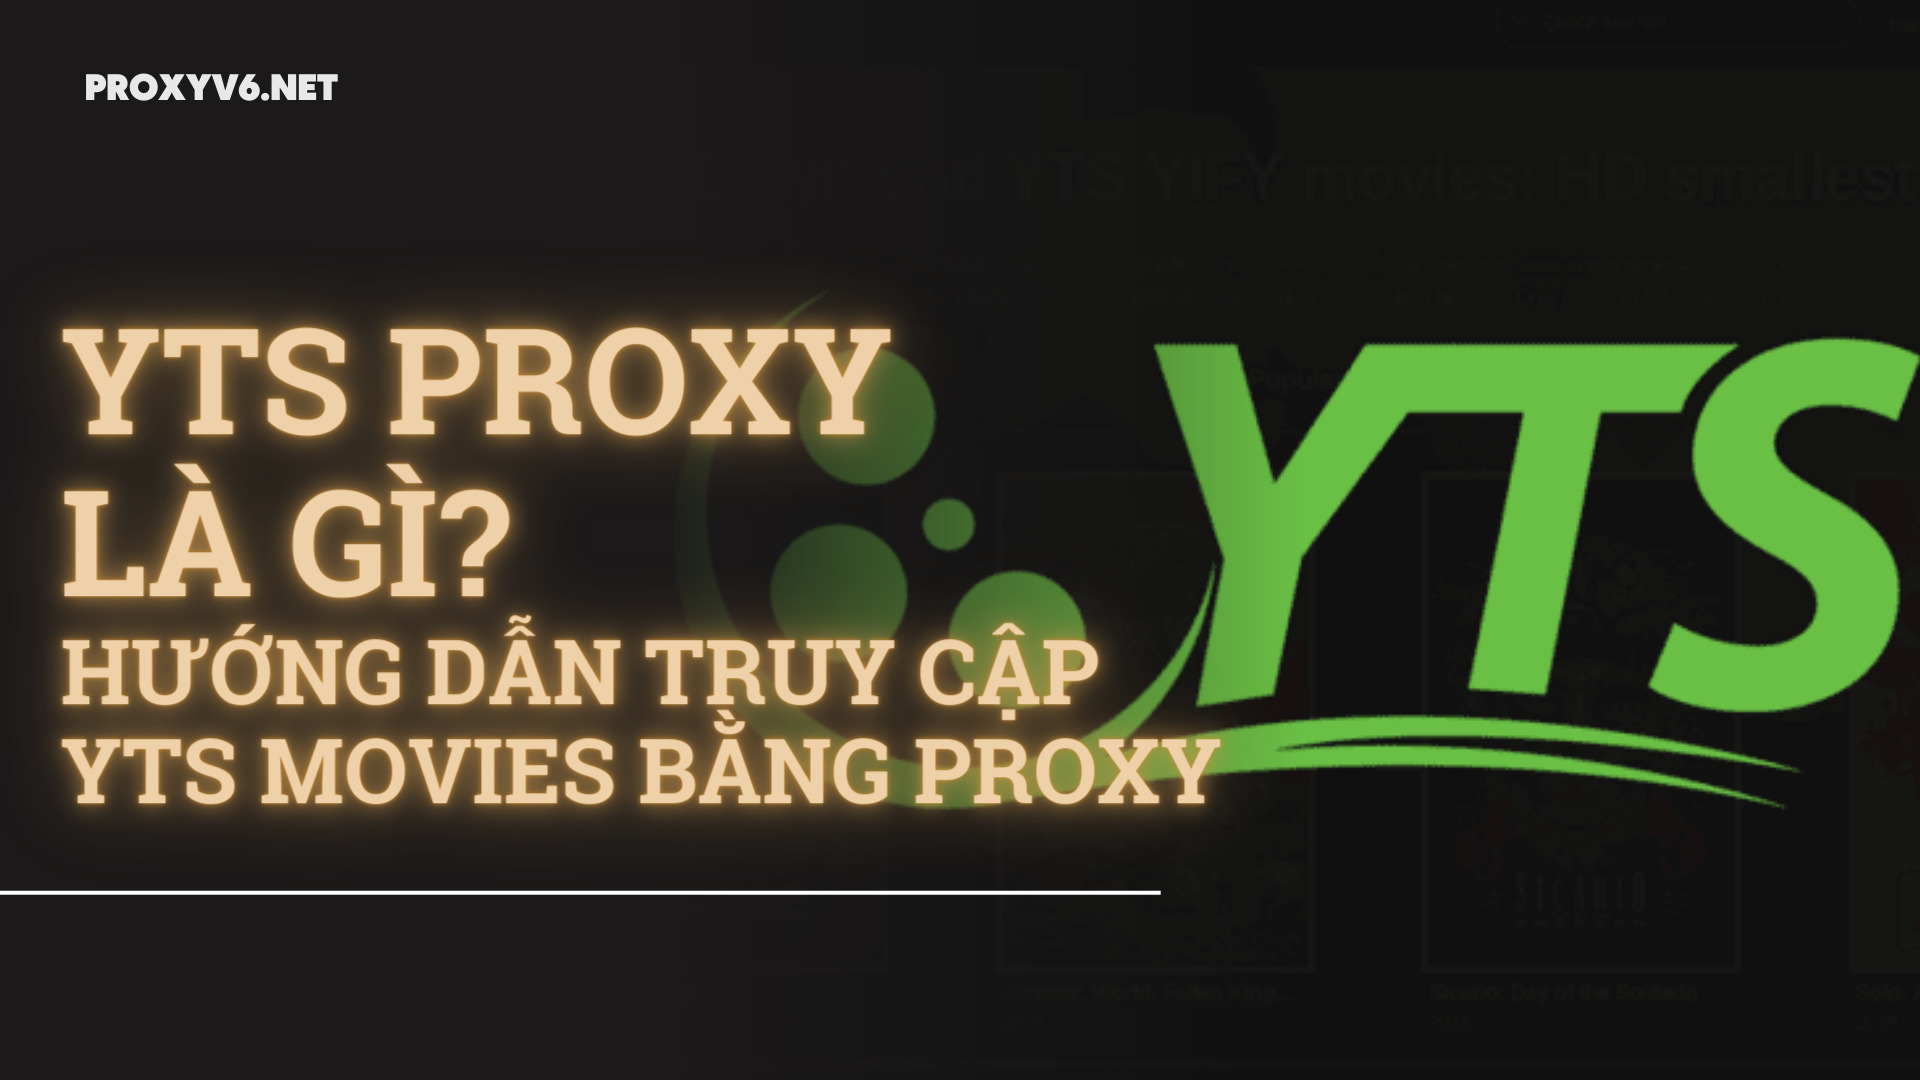 YTS Proxy là gì? Hướng dẫn truy cập YTS Movies bằng Proxy